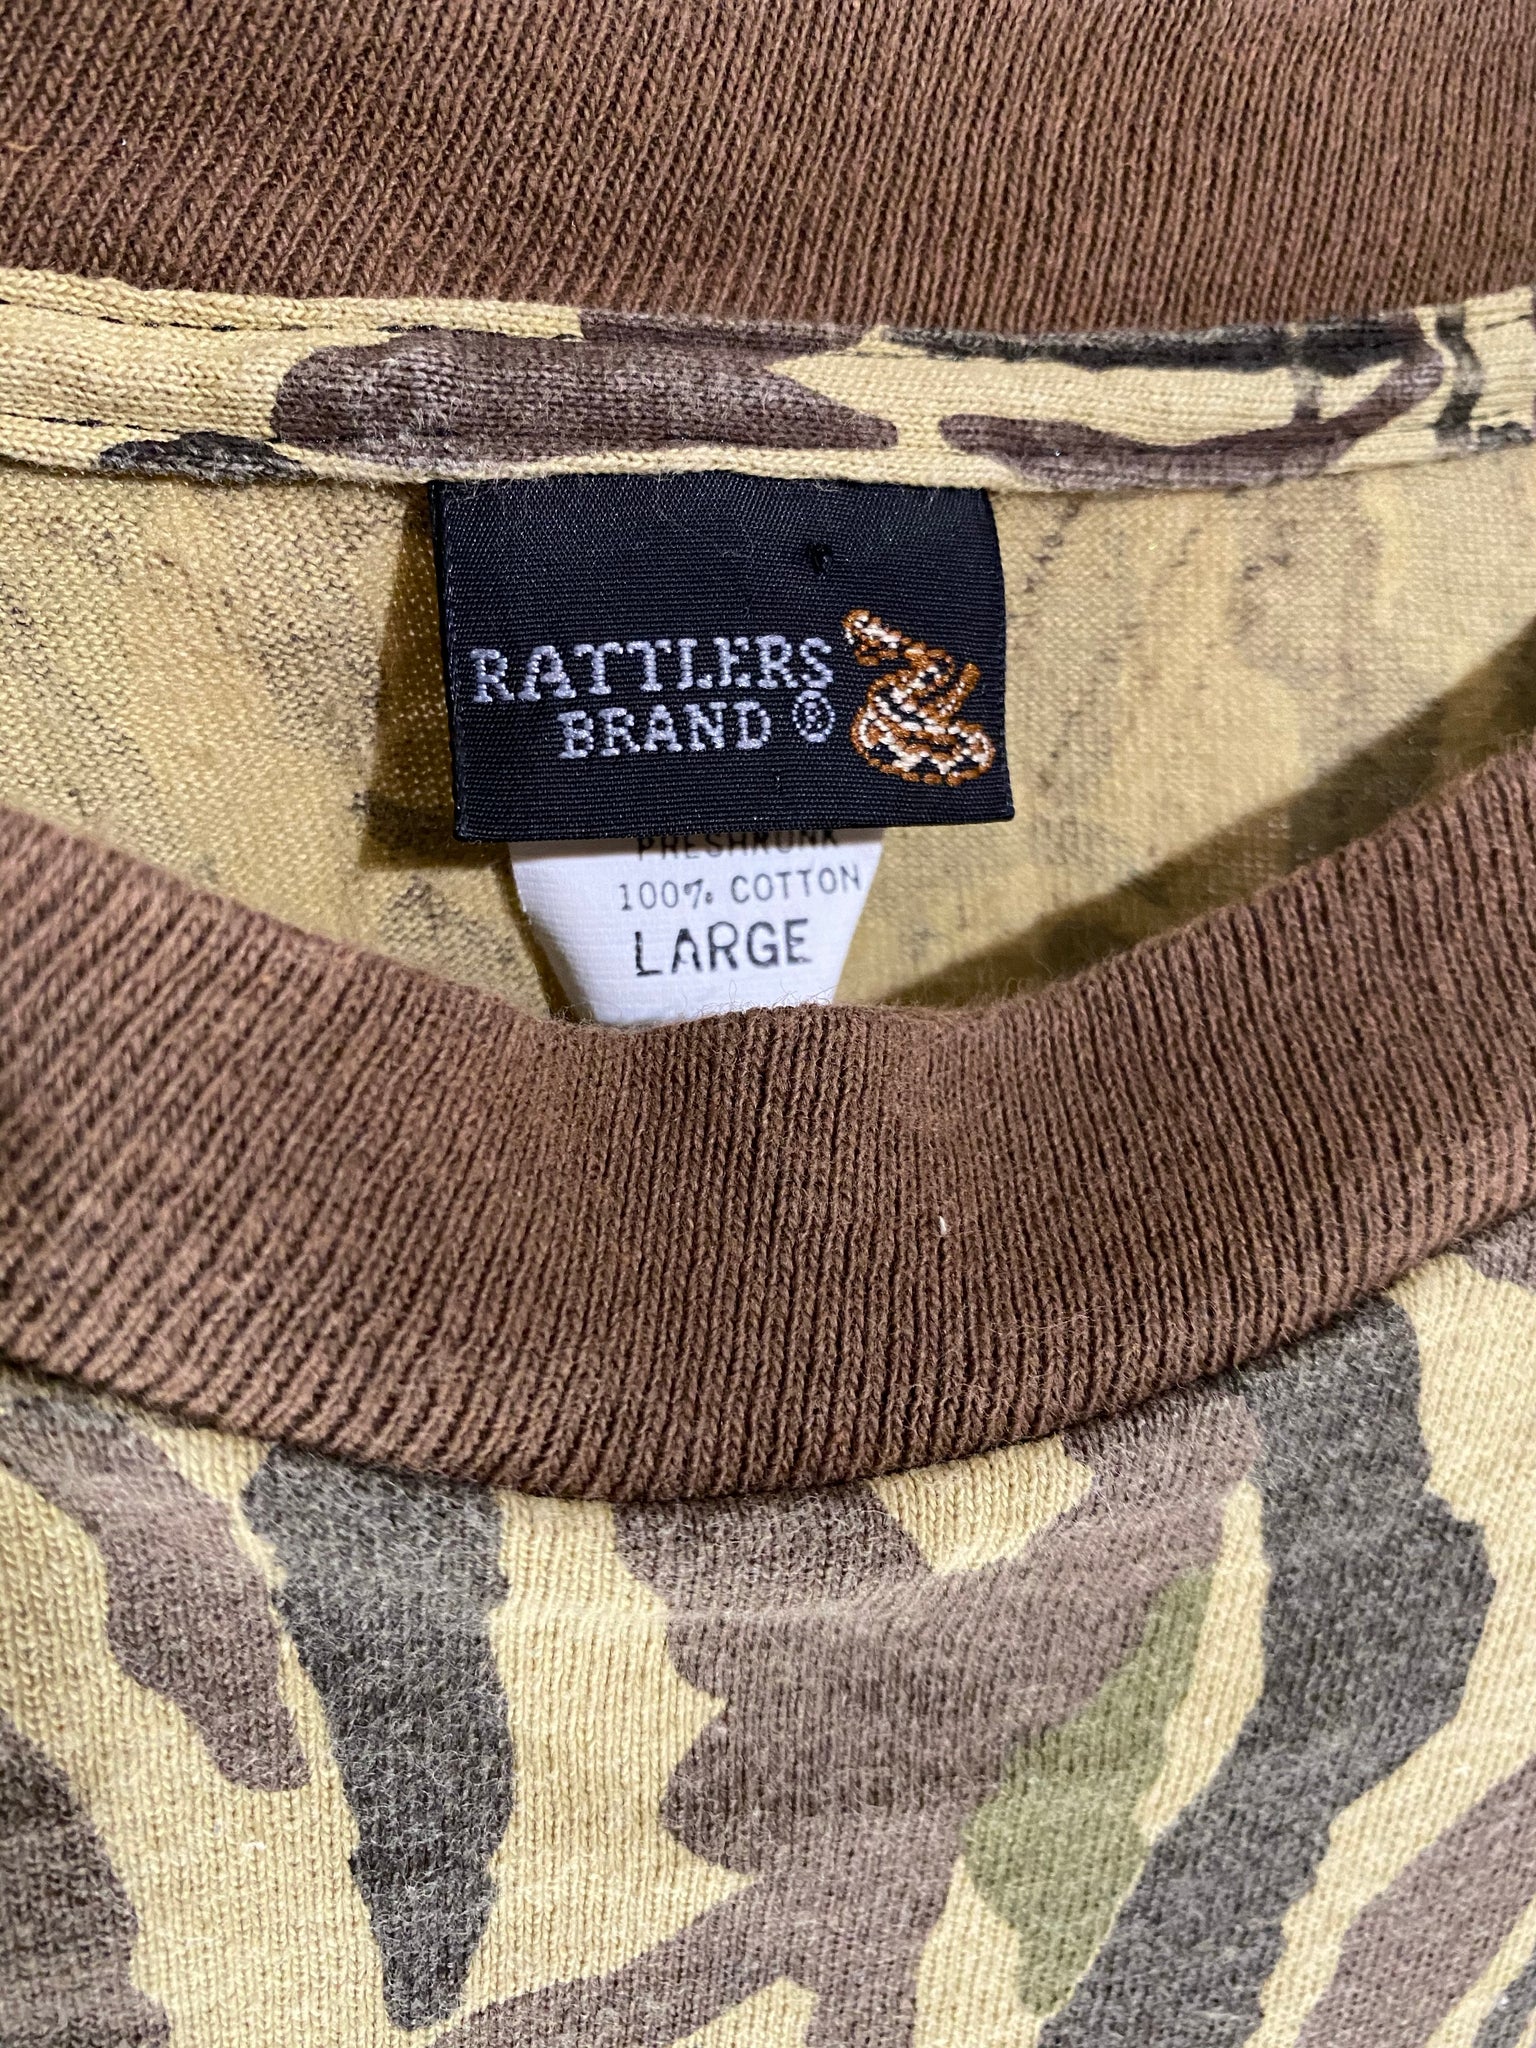 Vintage Rattler's Brand Ducks Unlimited Jacket USA MADE (L